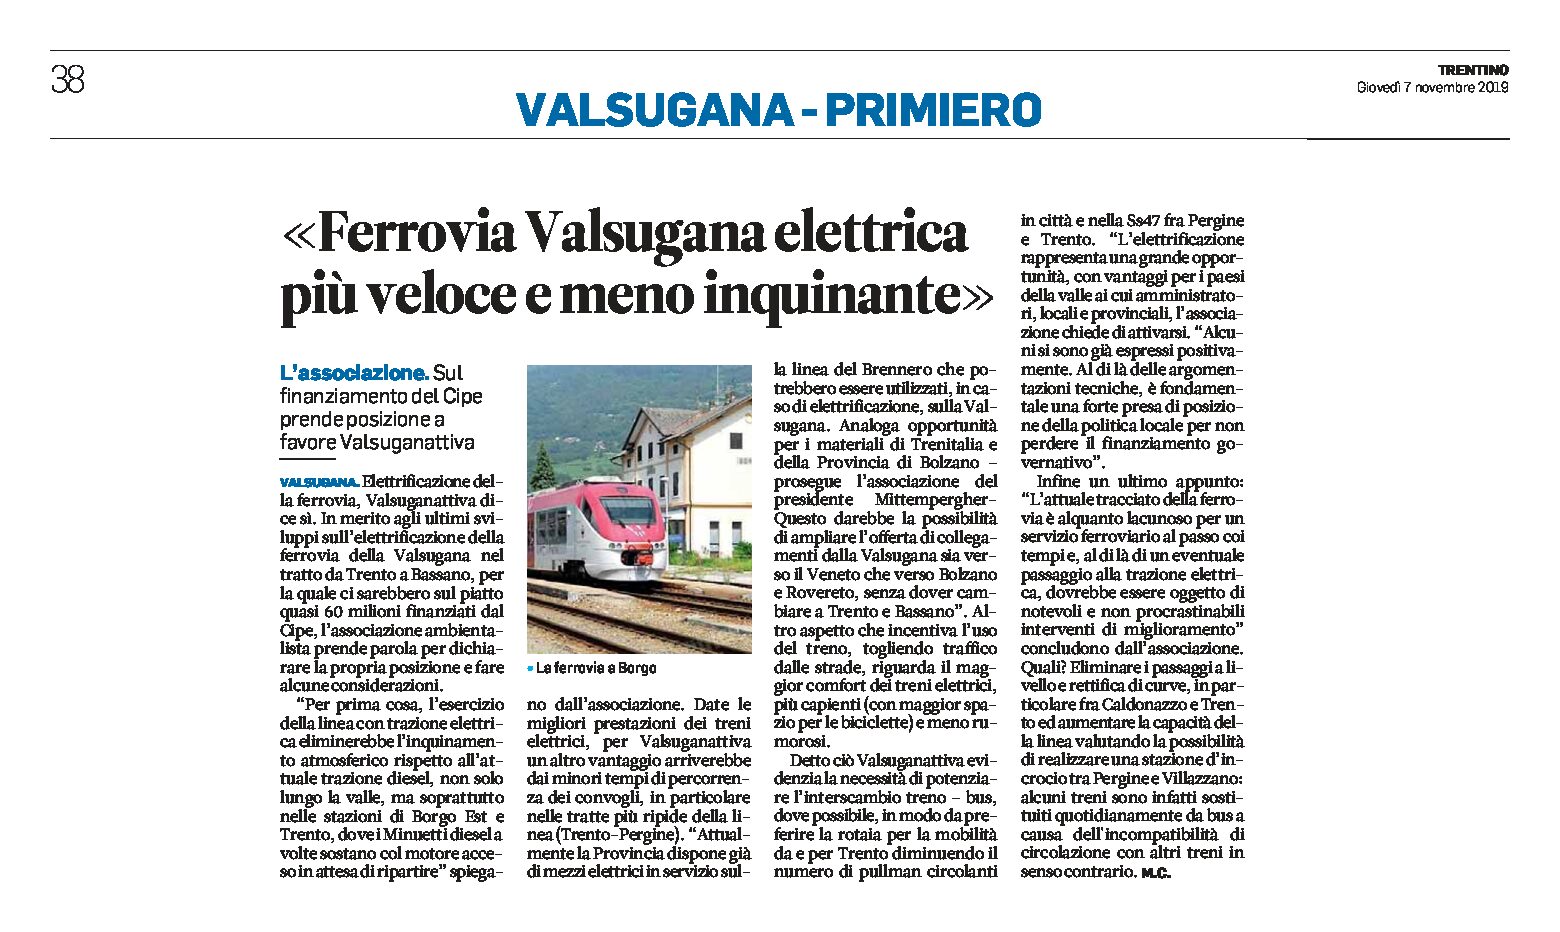 Valsugana: ferrovia elettrica più veloce e meno inquinante